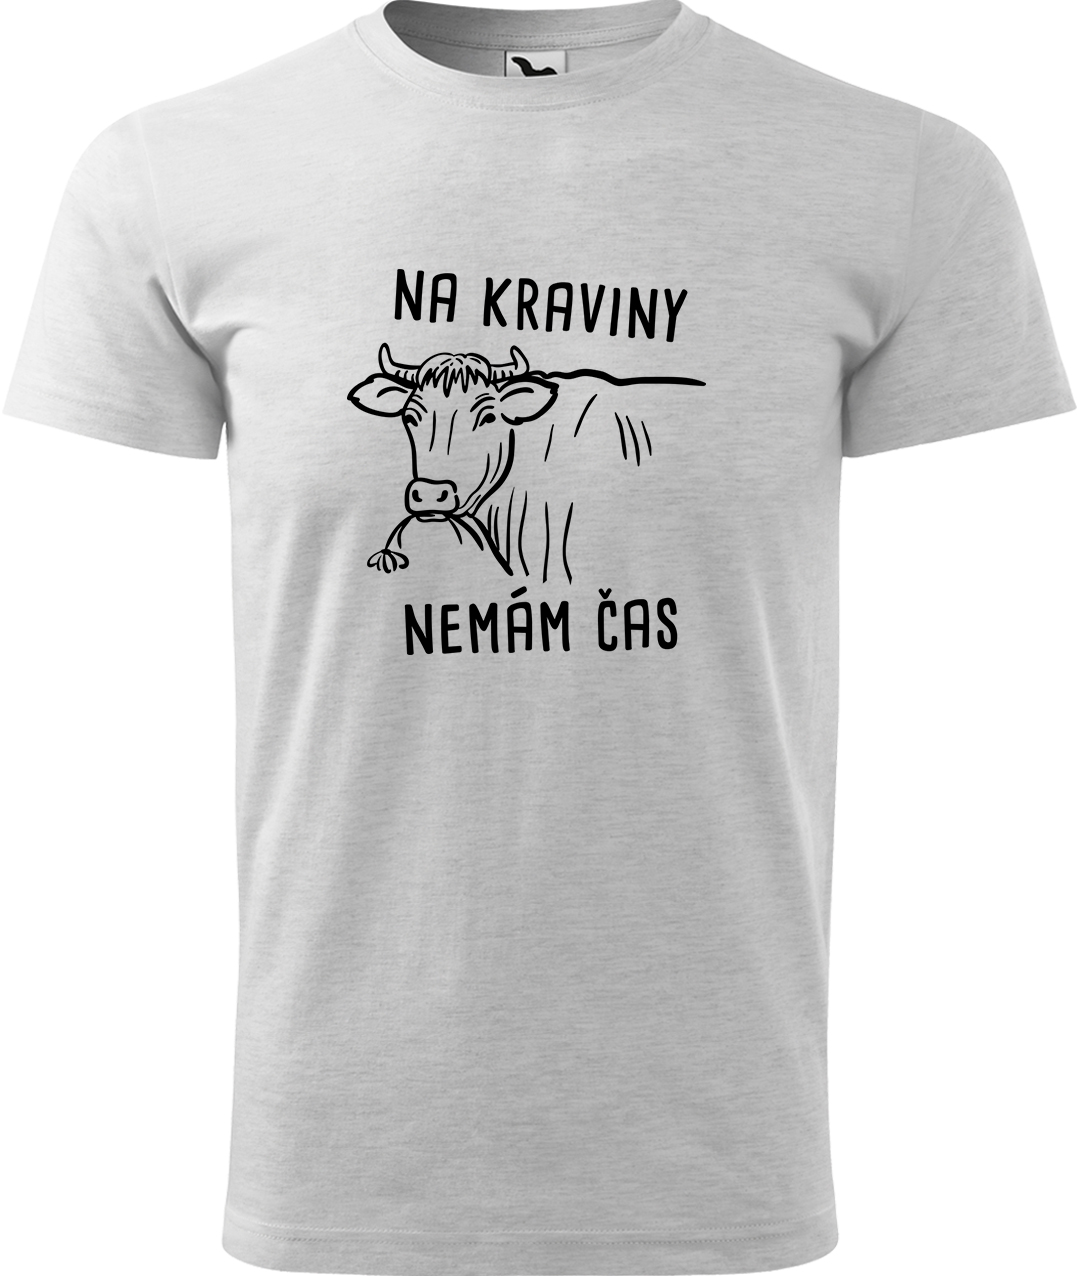 Pánské tričko s krávou - Na kraviny nemám čas Velikost: XL, Barva: Světle šedý melír (03), Střih: pánský